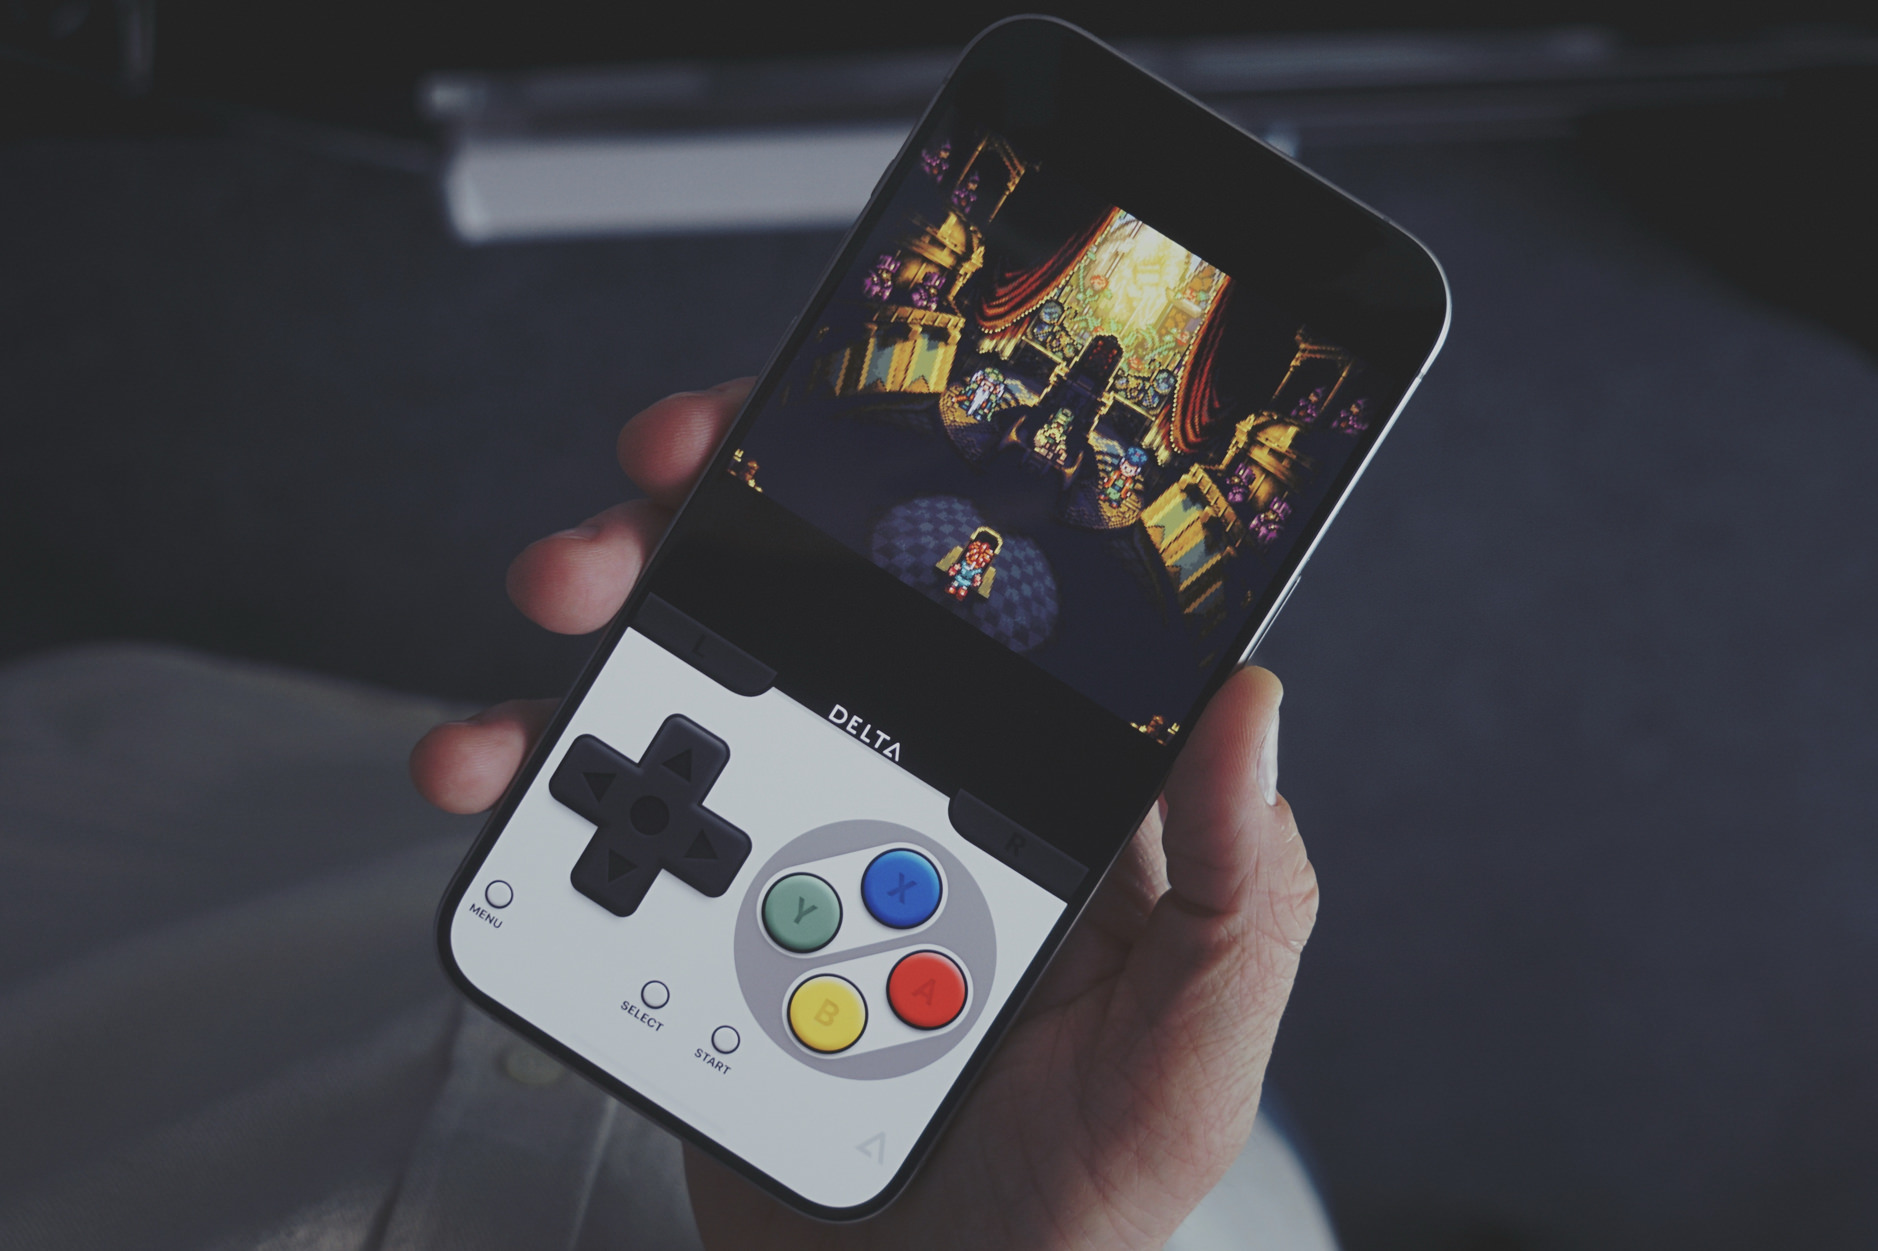 Auf dem Bild ist eine Hand zu sehen, die ein Smartphone hält, auf dessen Bildschirm Chrono Trigger, ein klassisches Videospiel, im Delta-Emulator dargestellt ist. Das Smartphone hat virtuelle Tasten im Stil eines alten SNES-Spielcontrollers.